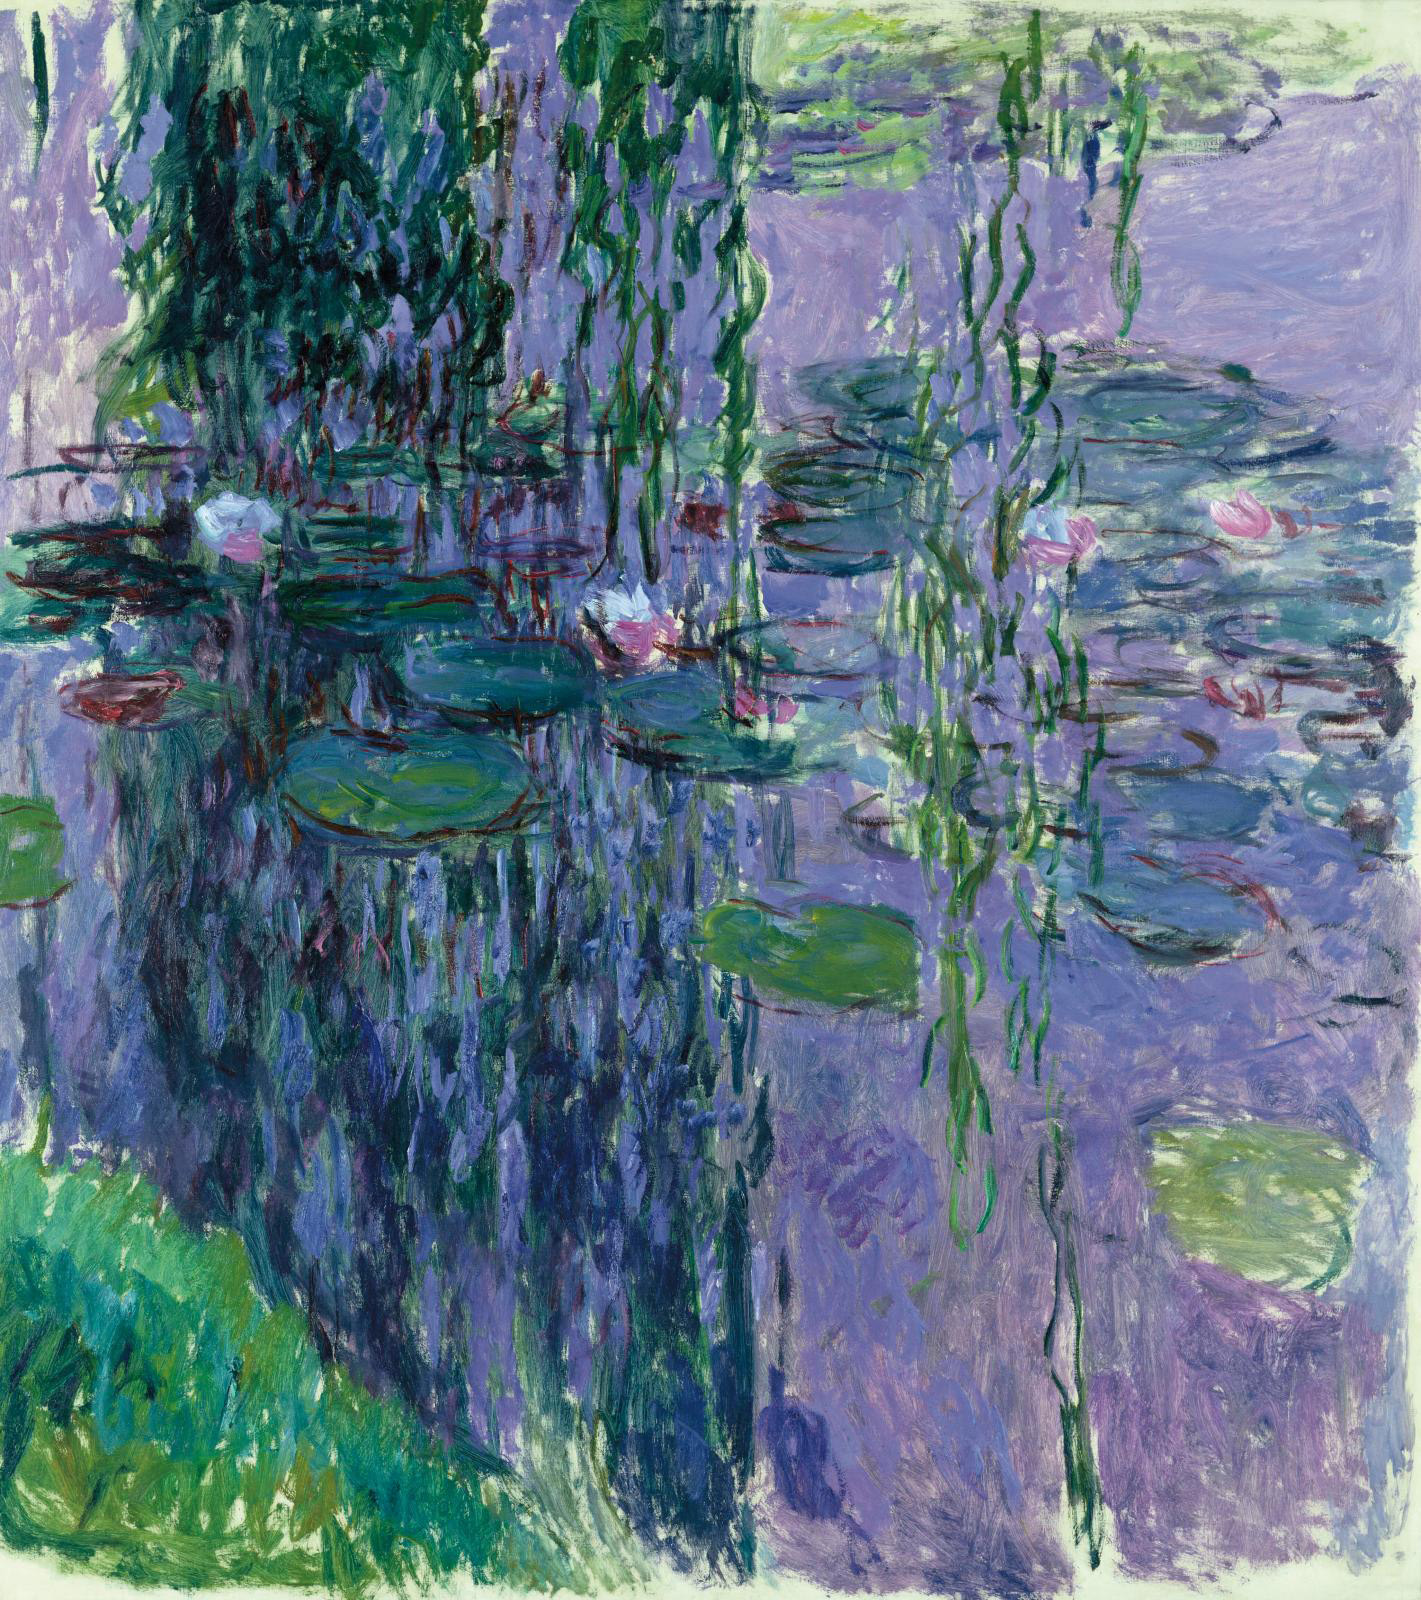 Monet-Mitchell at the Fondation Louis Vuitton, Paris